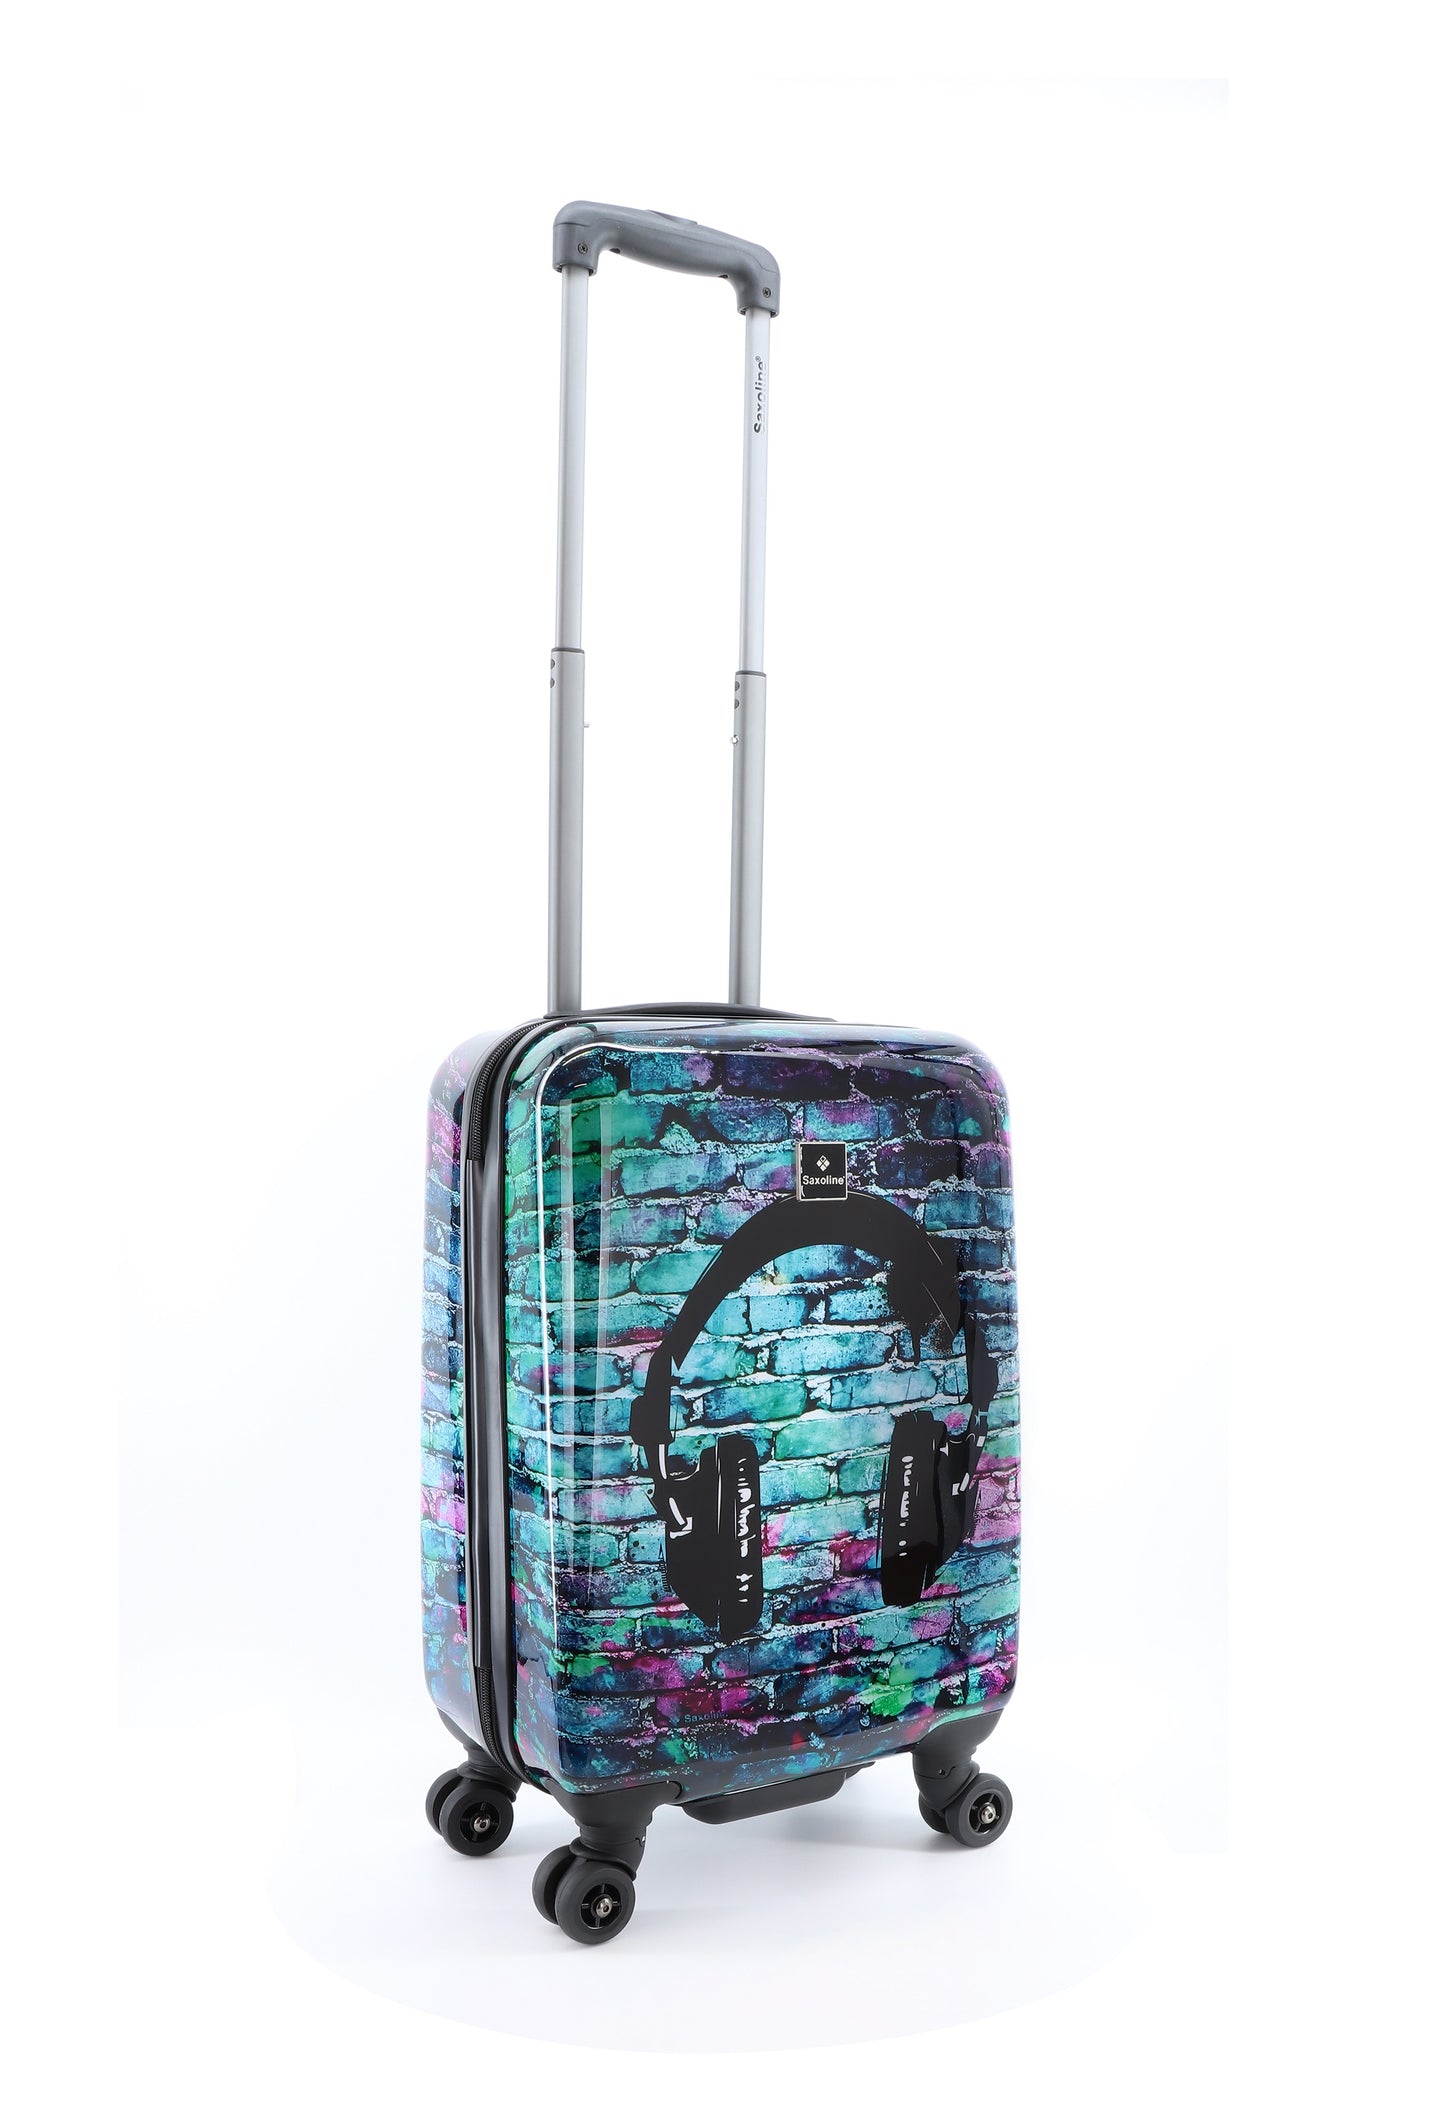 Valise rigide pour bagage à main Saxoline / Trolley / Valise de voyage - 55 cm (Petite) - Impression casque